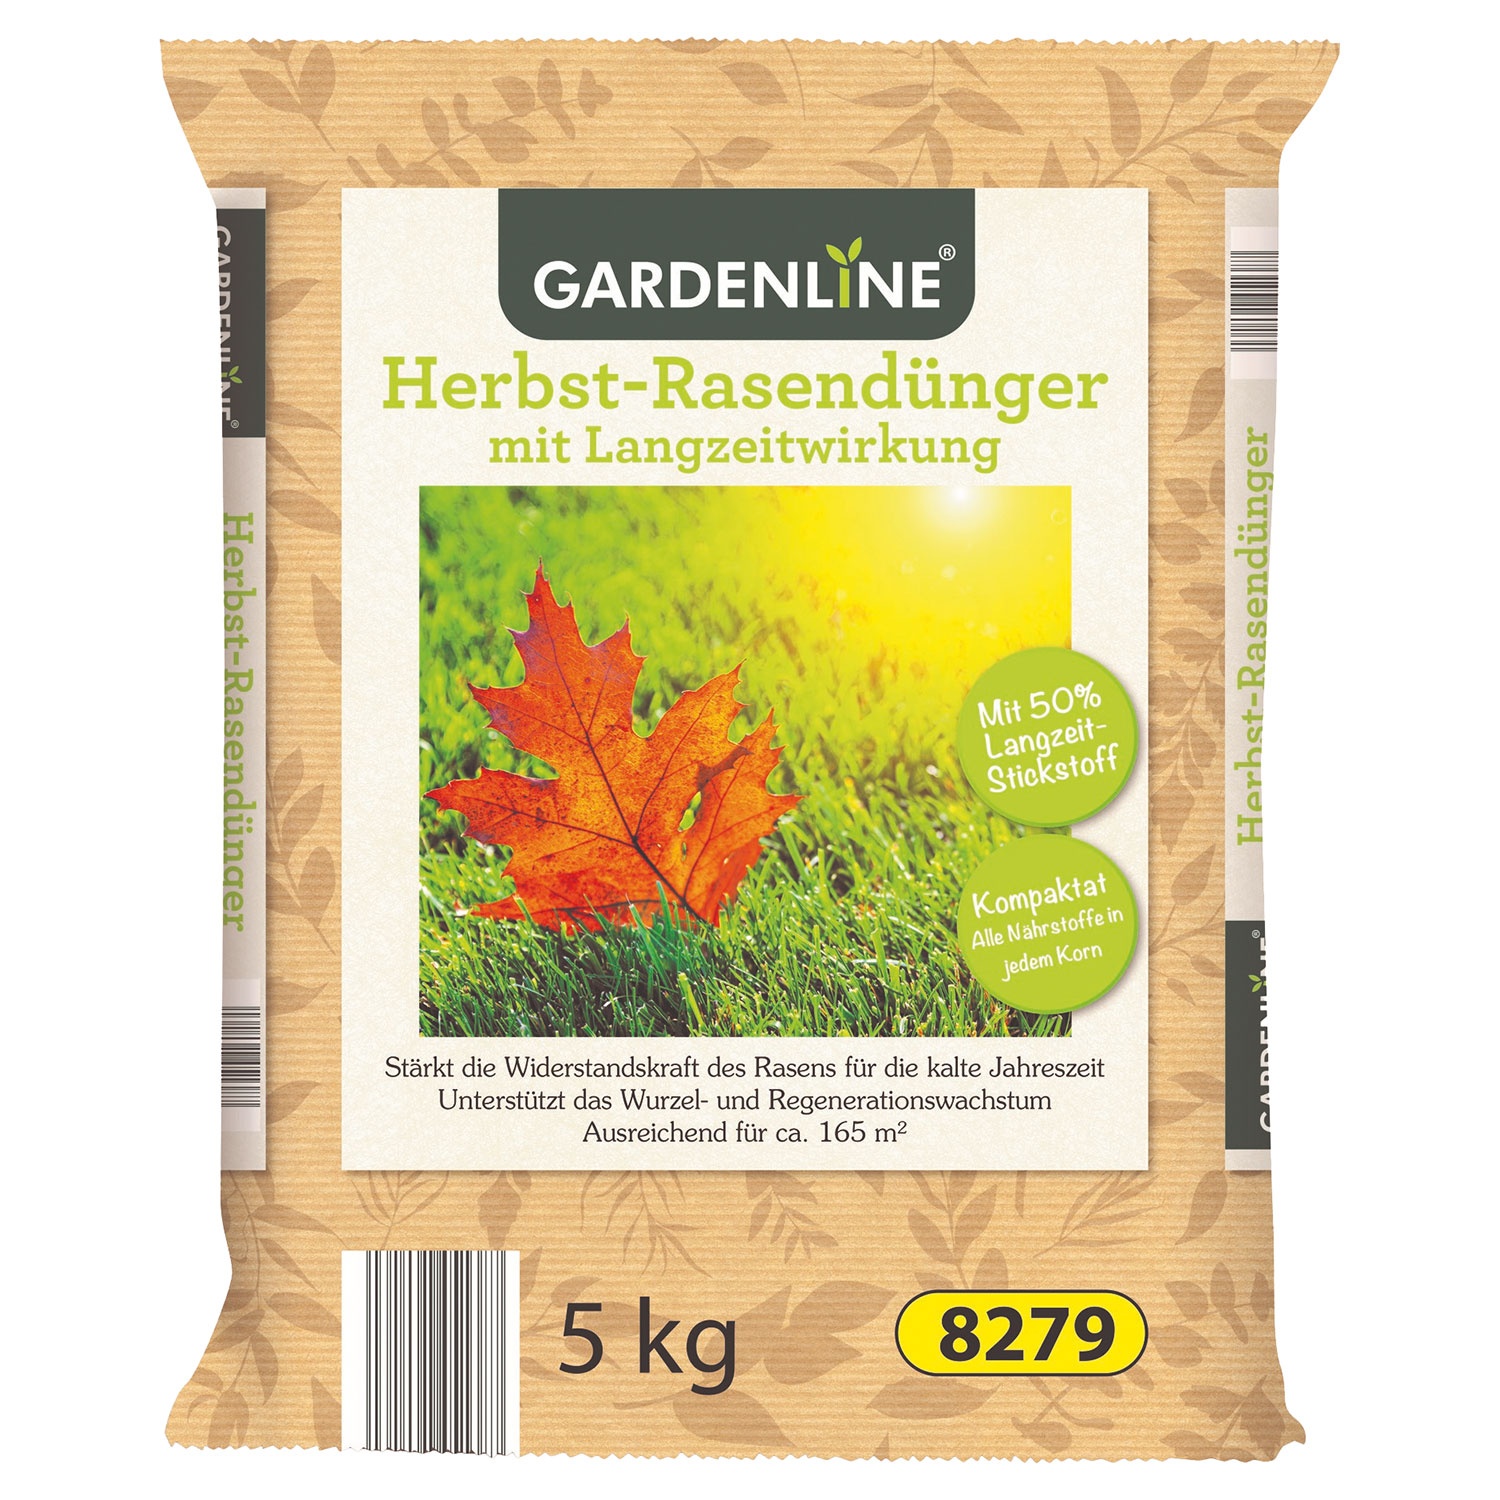 GARDENLINE Herbst-Rasendünger 5 kg